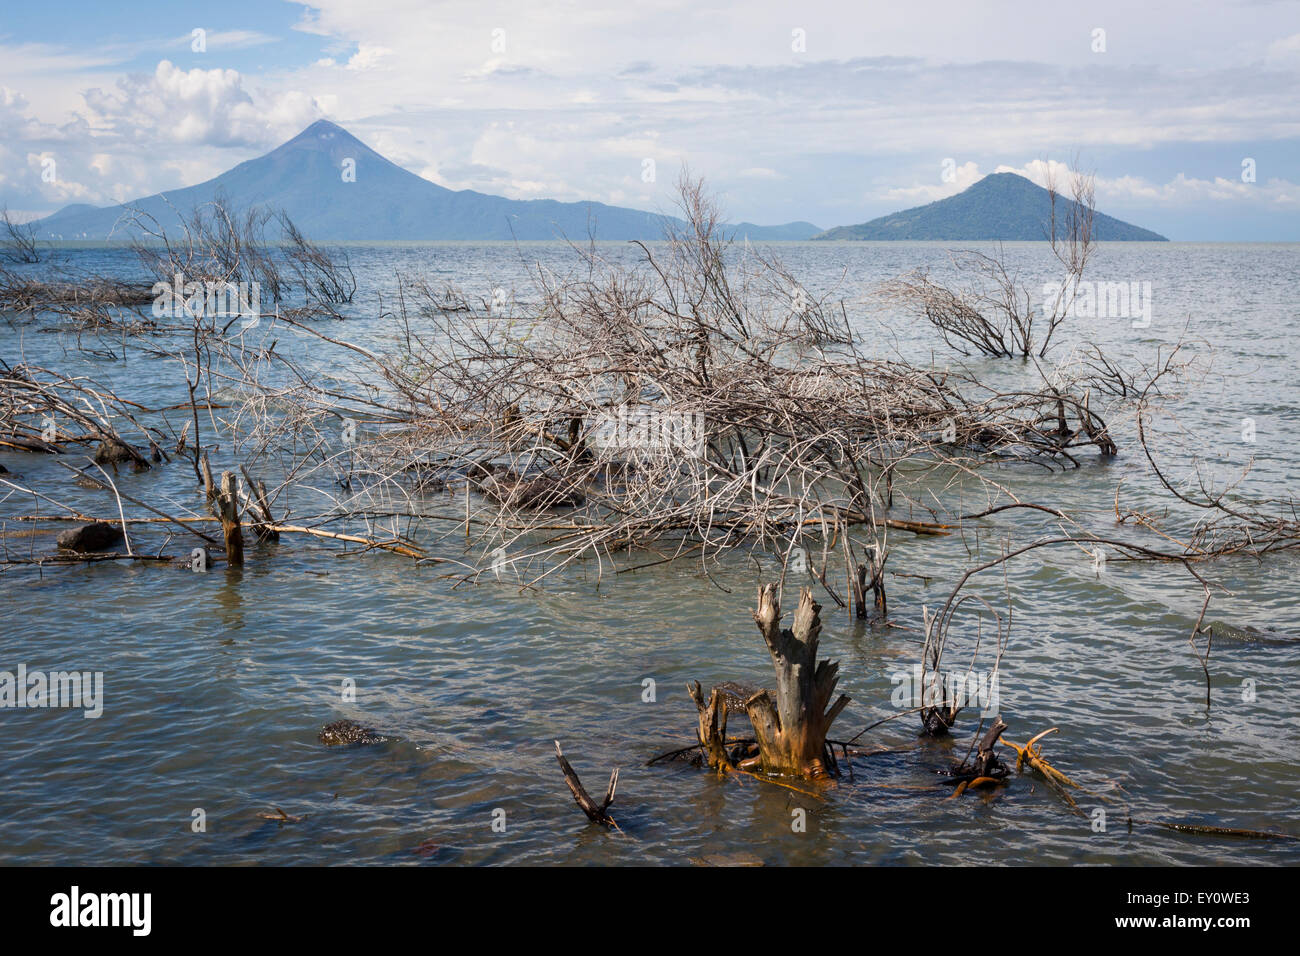 Momotombo and Momotombito volcanoes from Lake Managua, Nicaragua Stock Photo